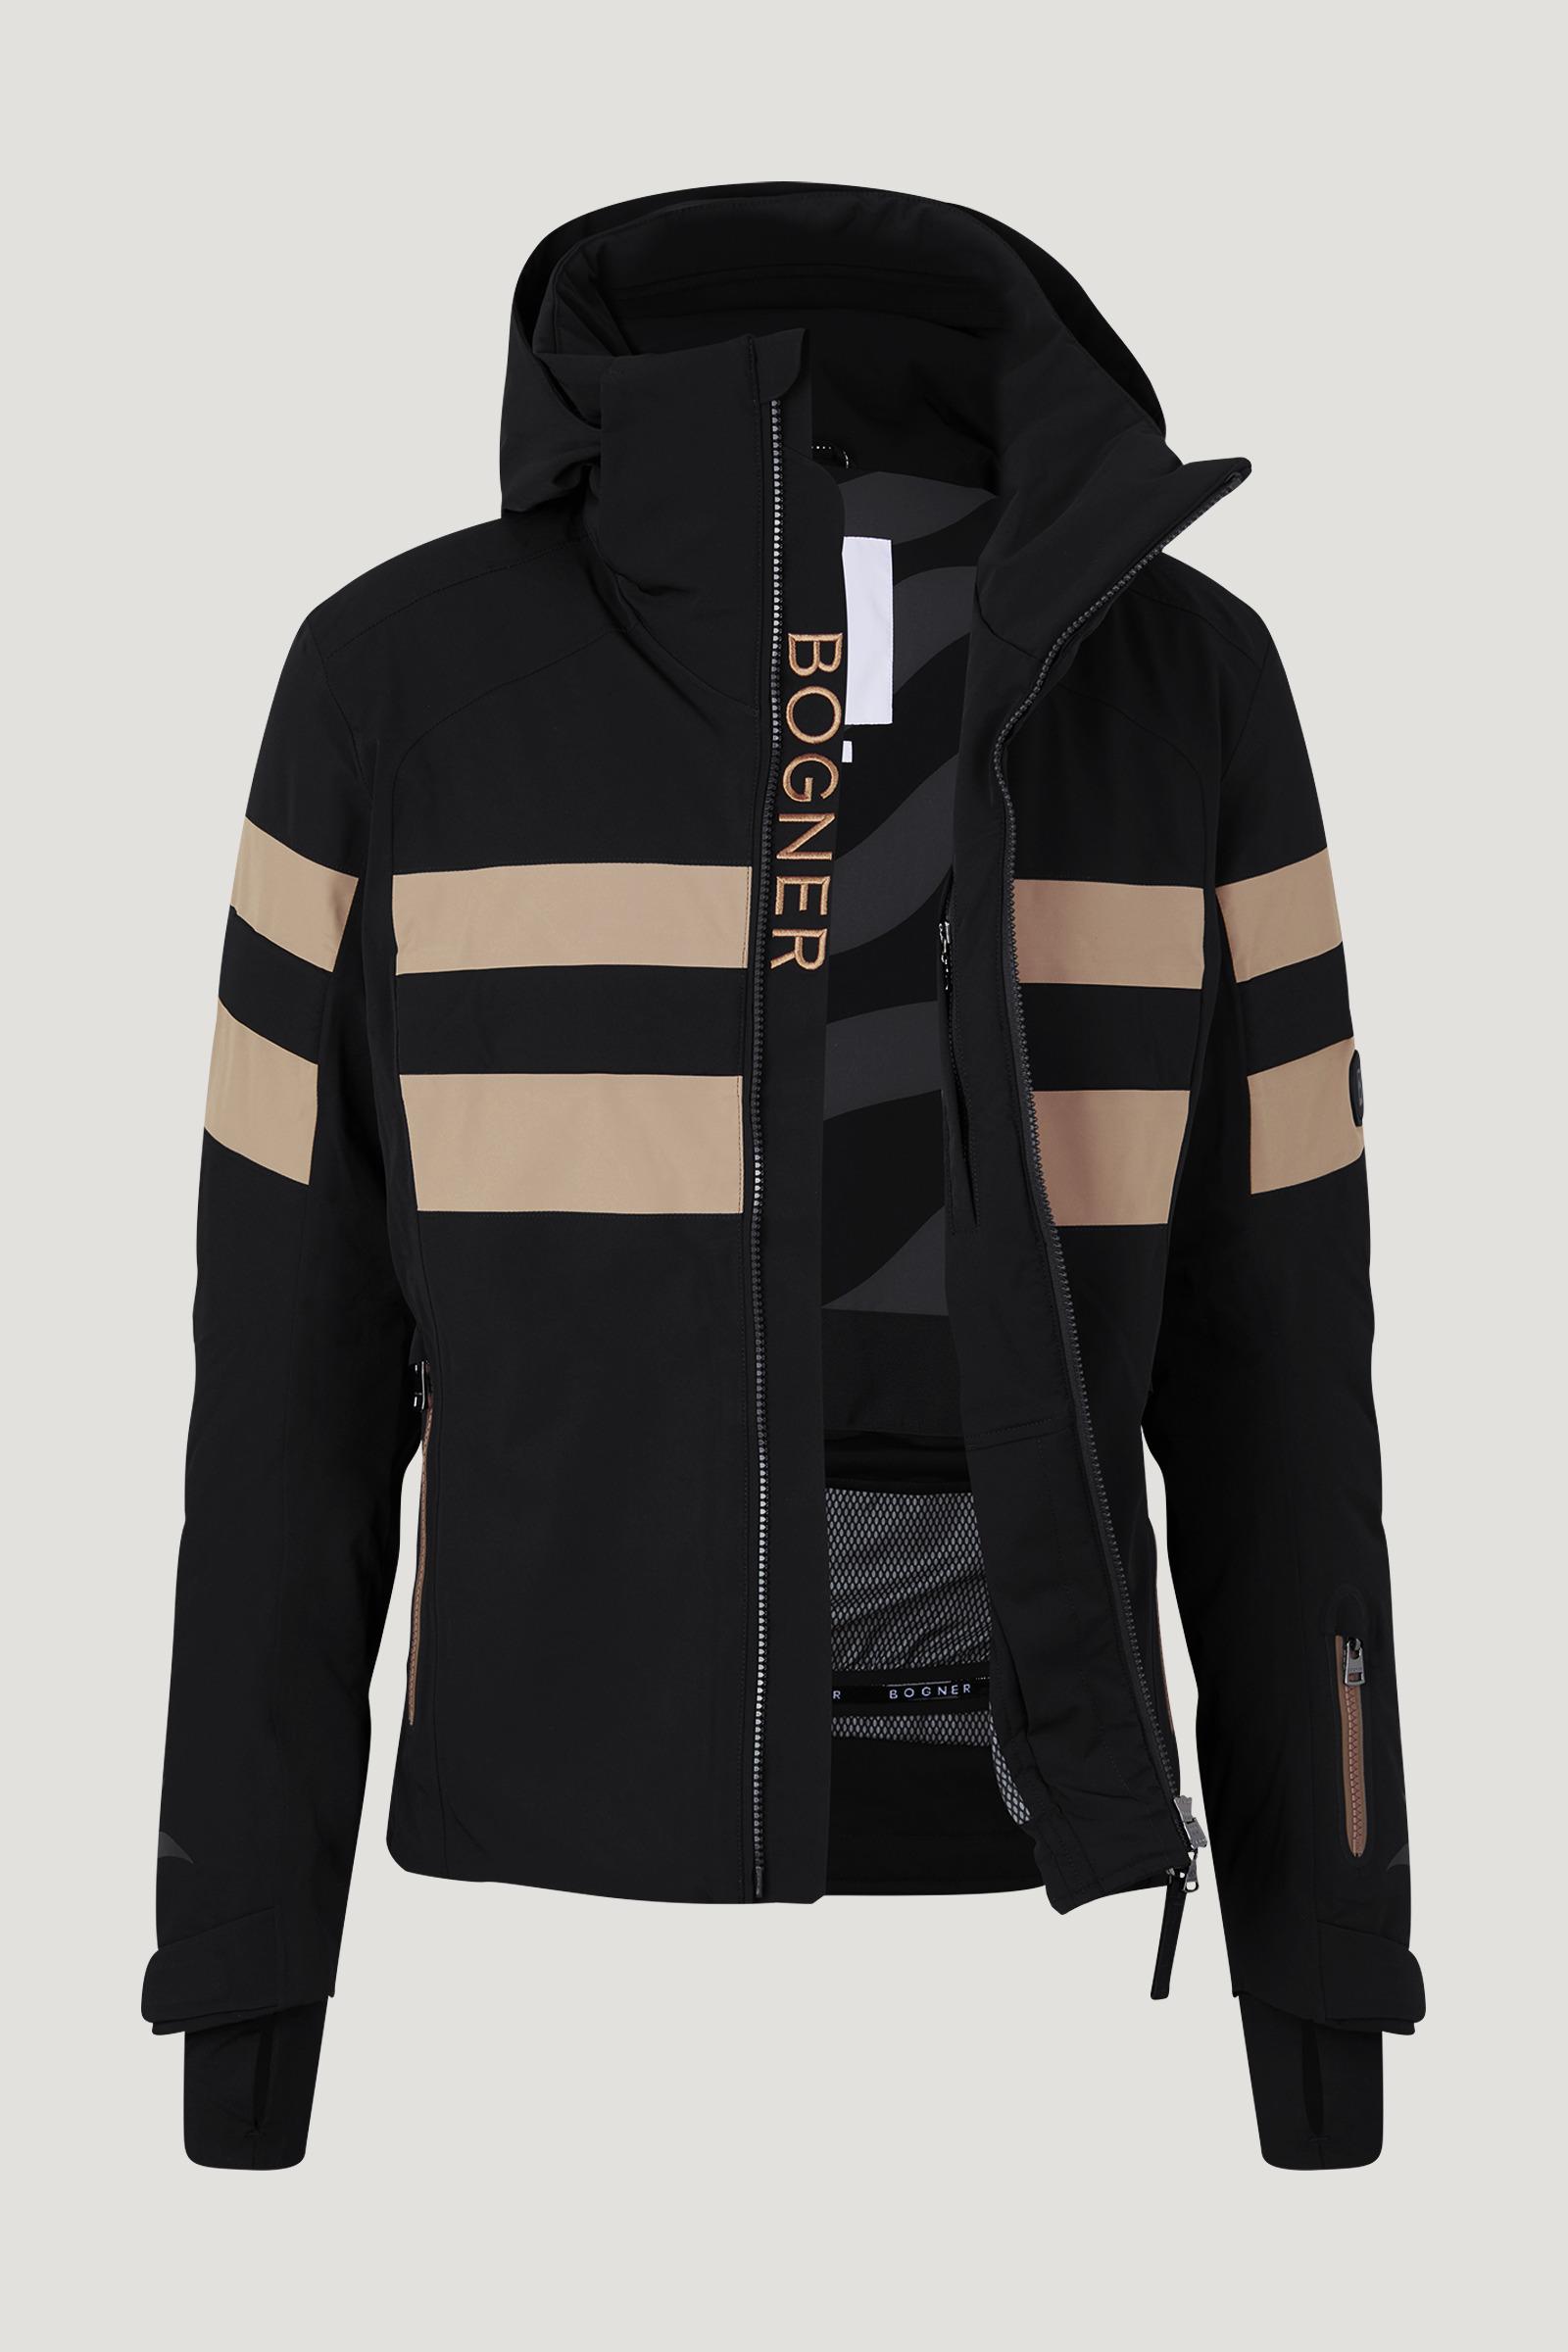 Bogner Jed Ski Jacket in Black/Beige (Black) for Men | Lyst Canada